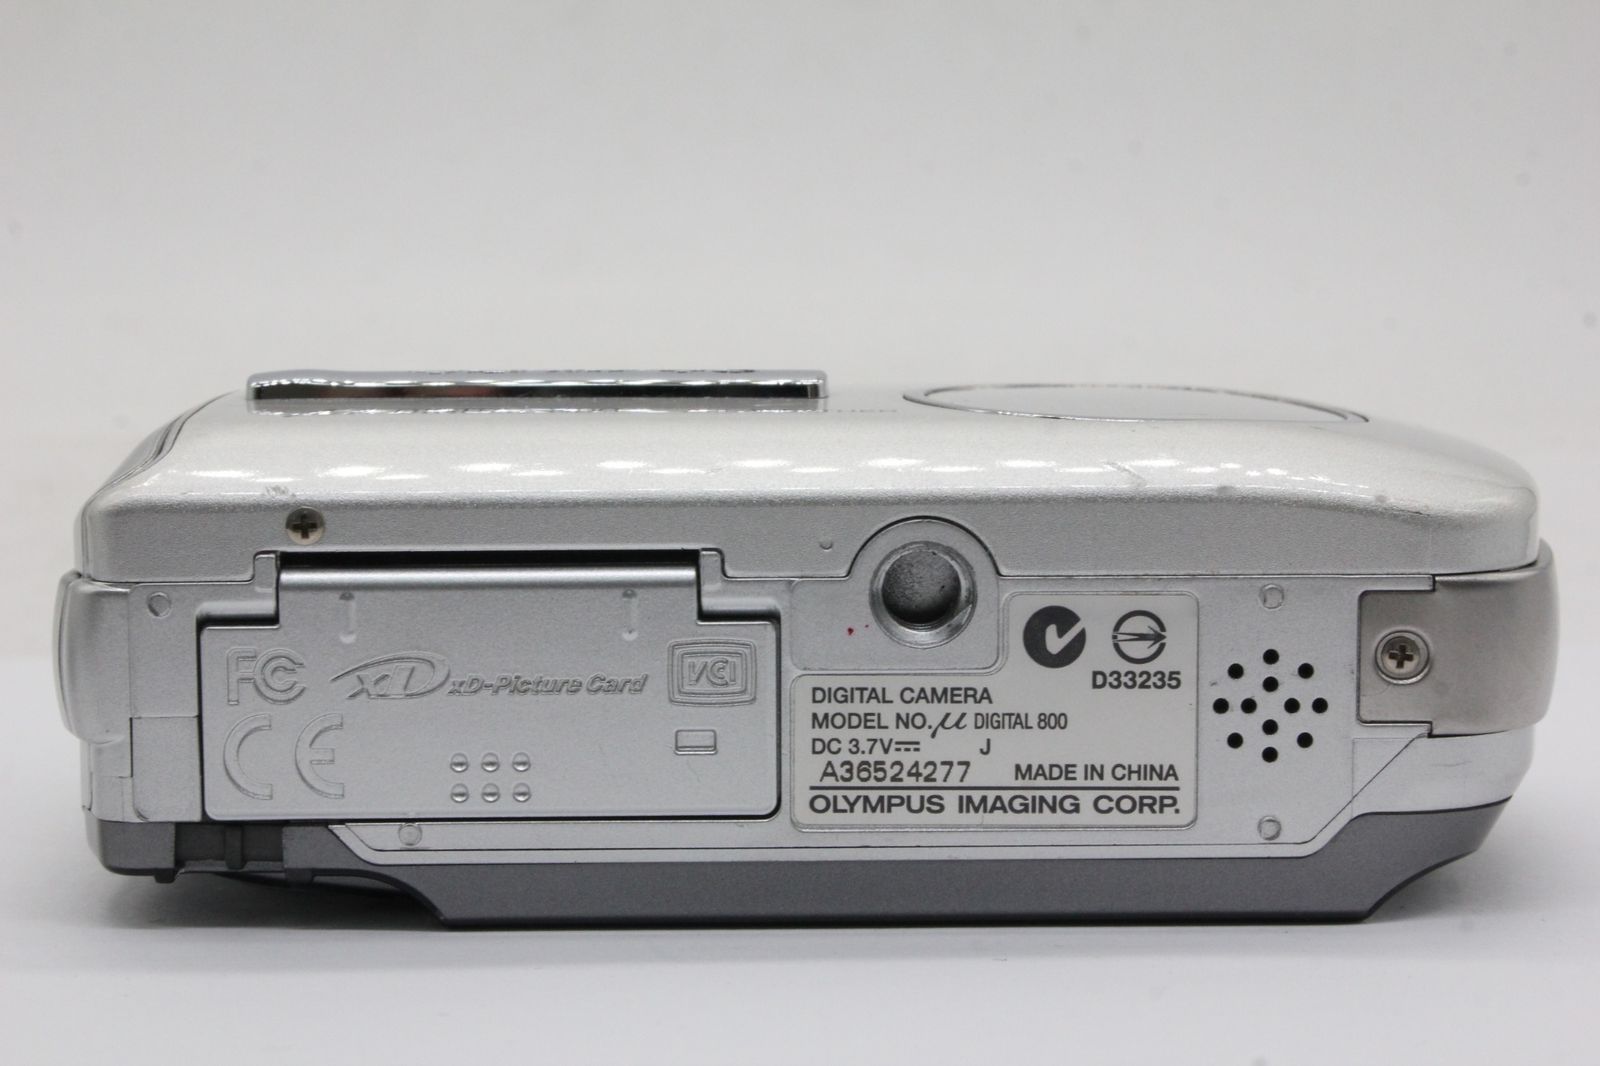 オリンパス 【返品保証】 オリンパス Olympus μ Digital 800 3x バッテリー付き コンパクトデジタルカメラ v1609